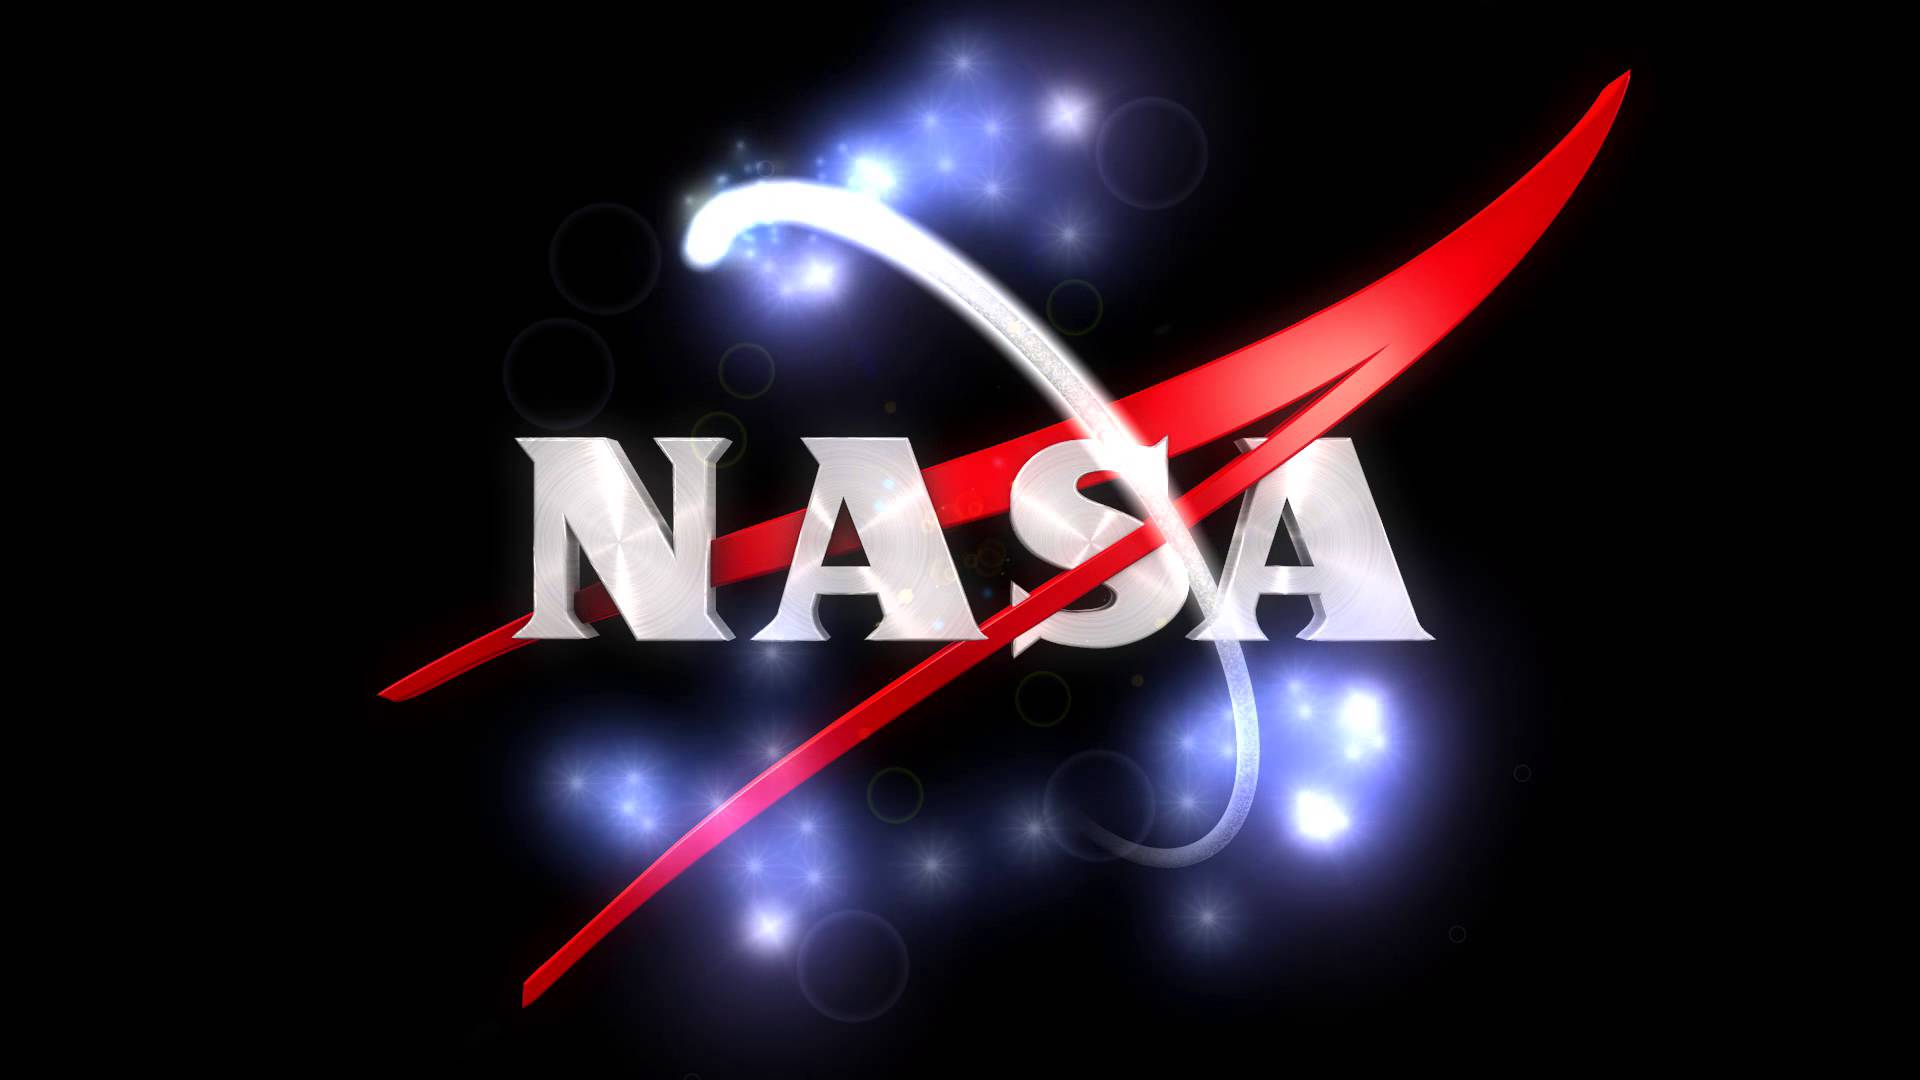 Nasa Logo Wallpapers